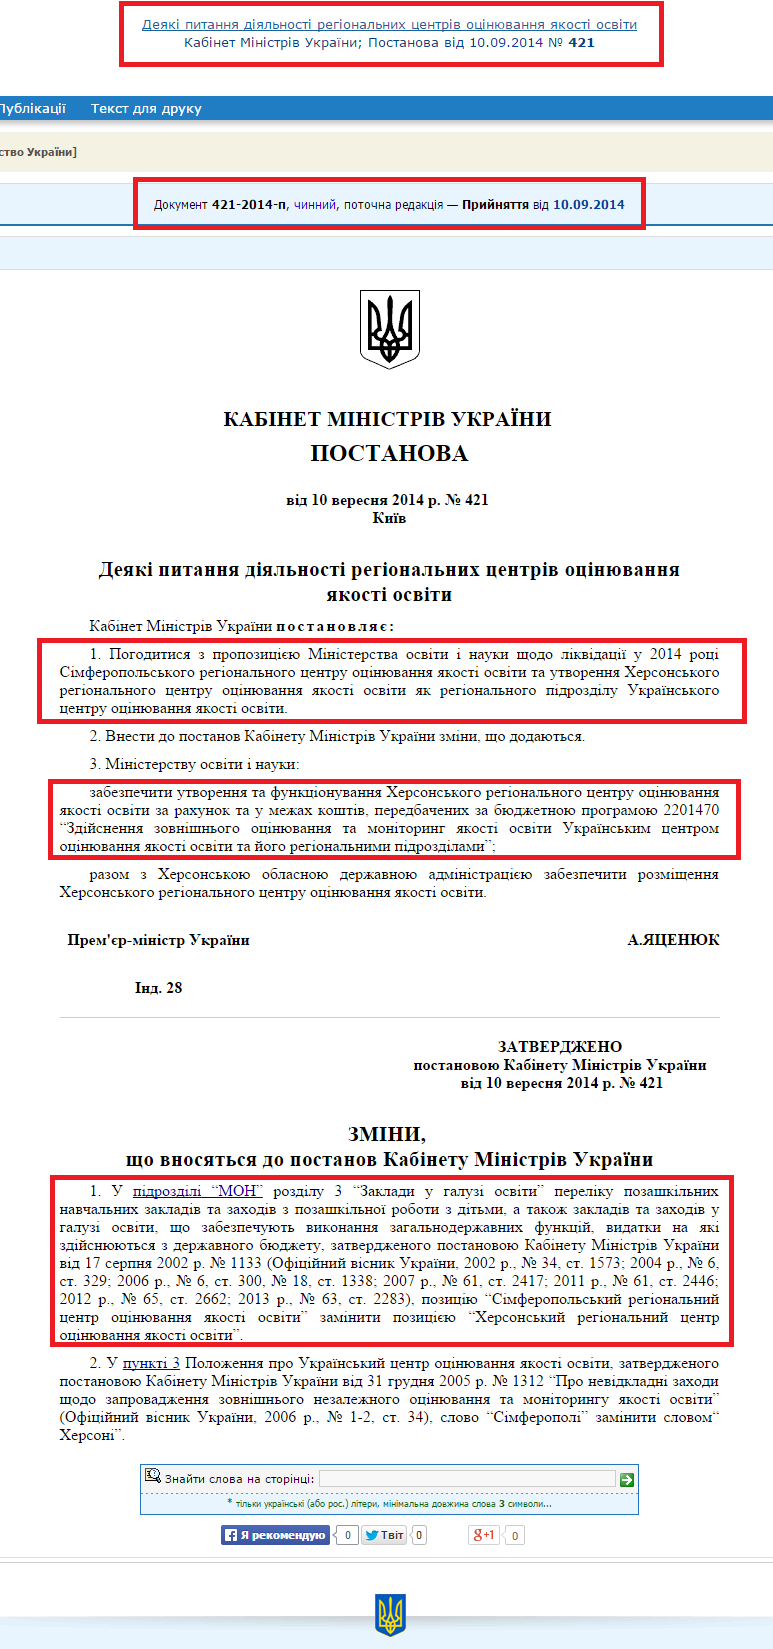 http://zakon4.rada.gov.ua/laws/show/421-2014-%D0%BF